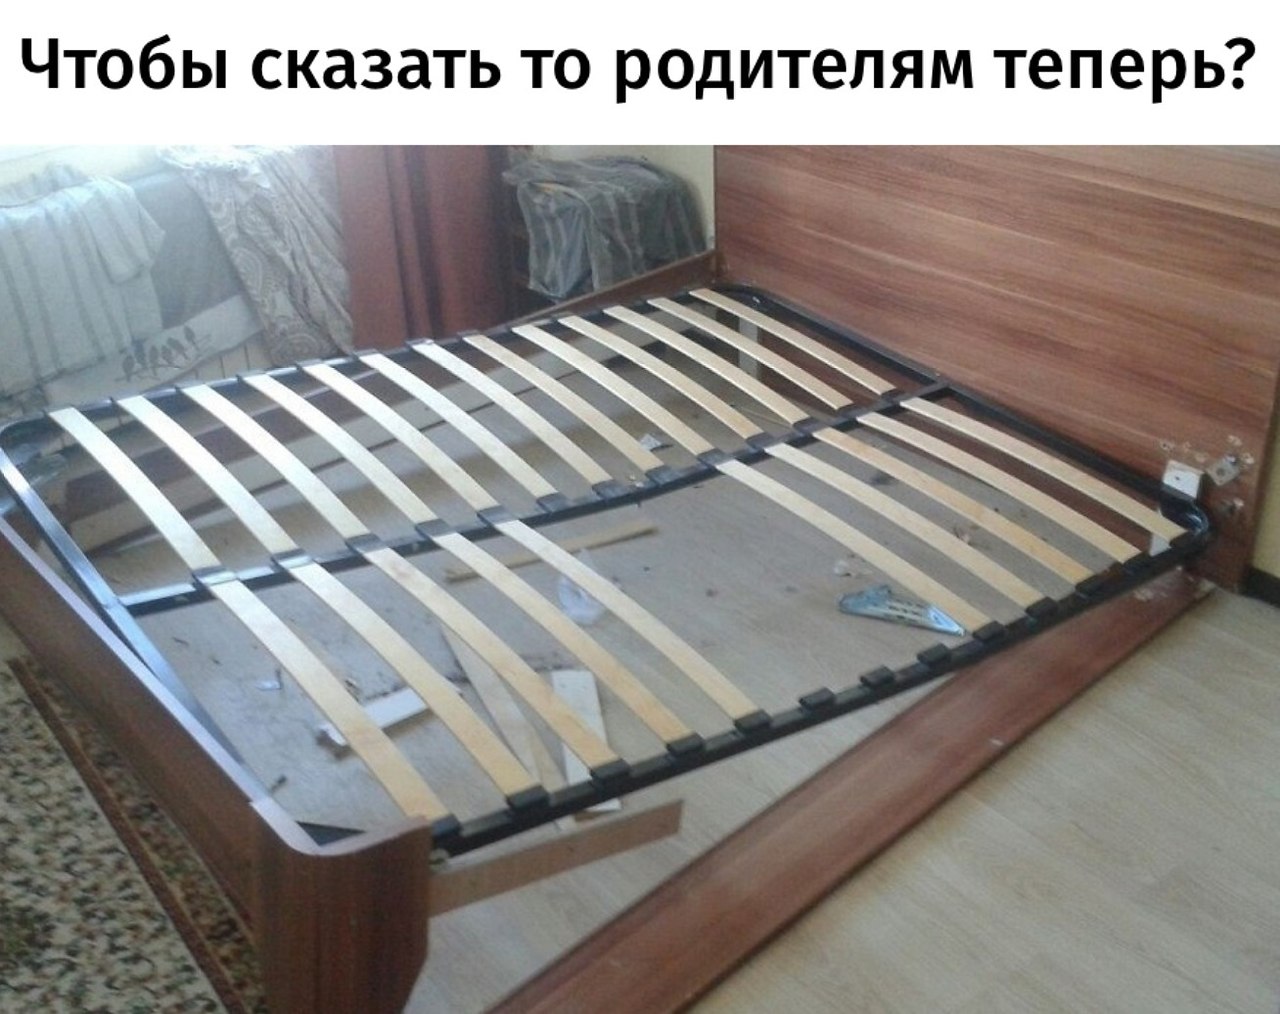 Кровать сломалась